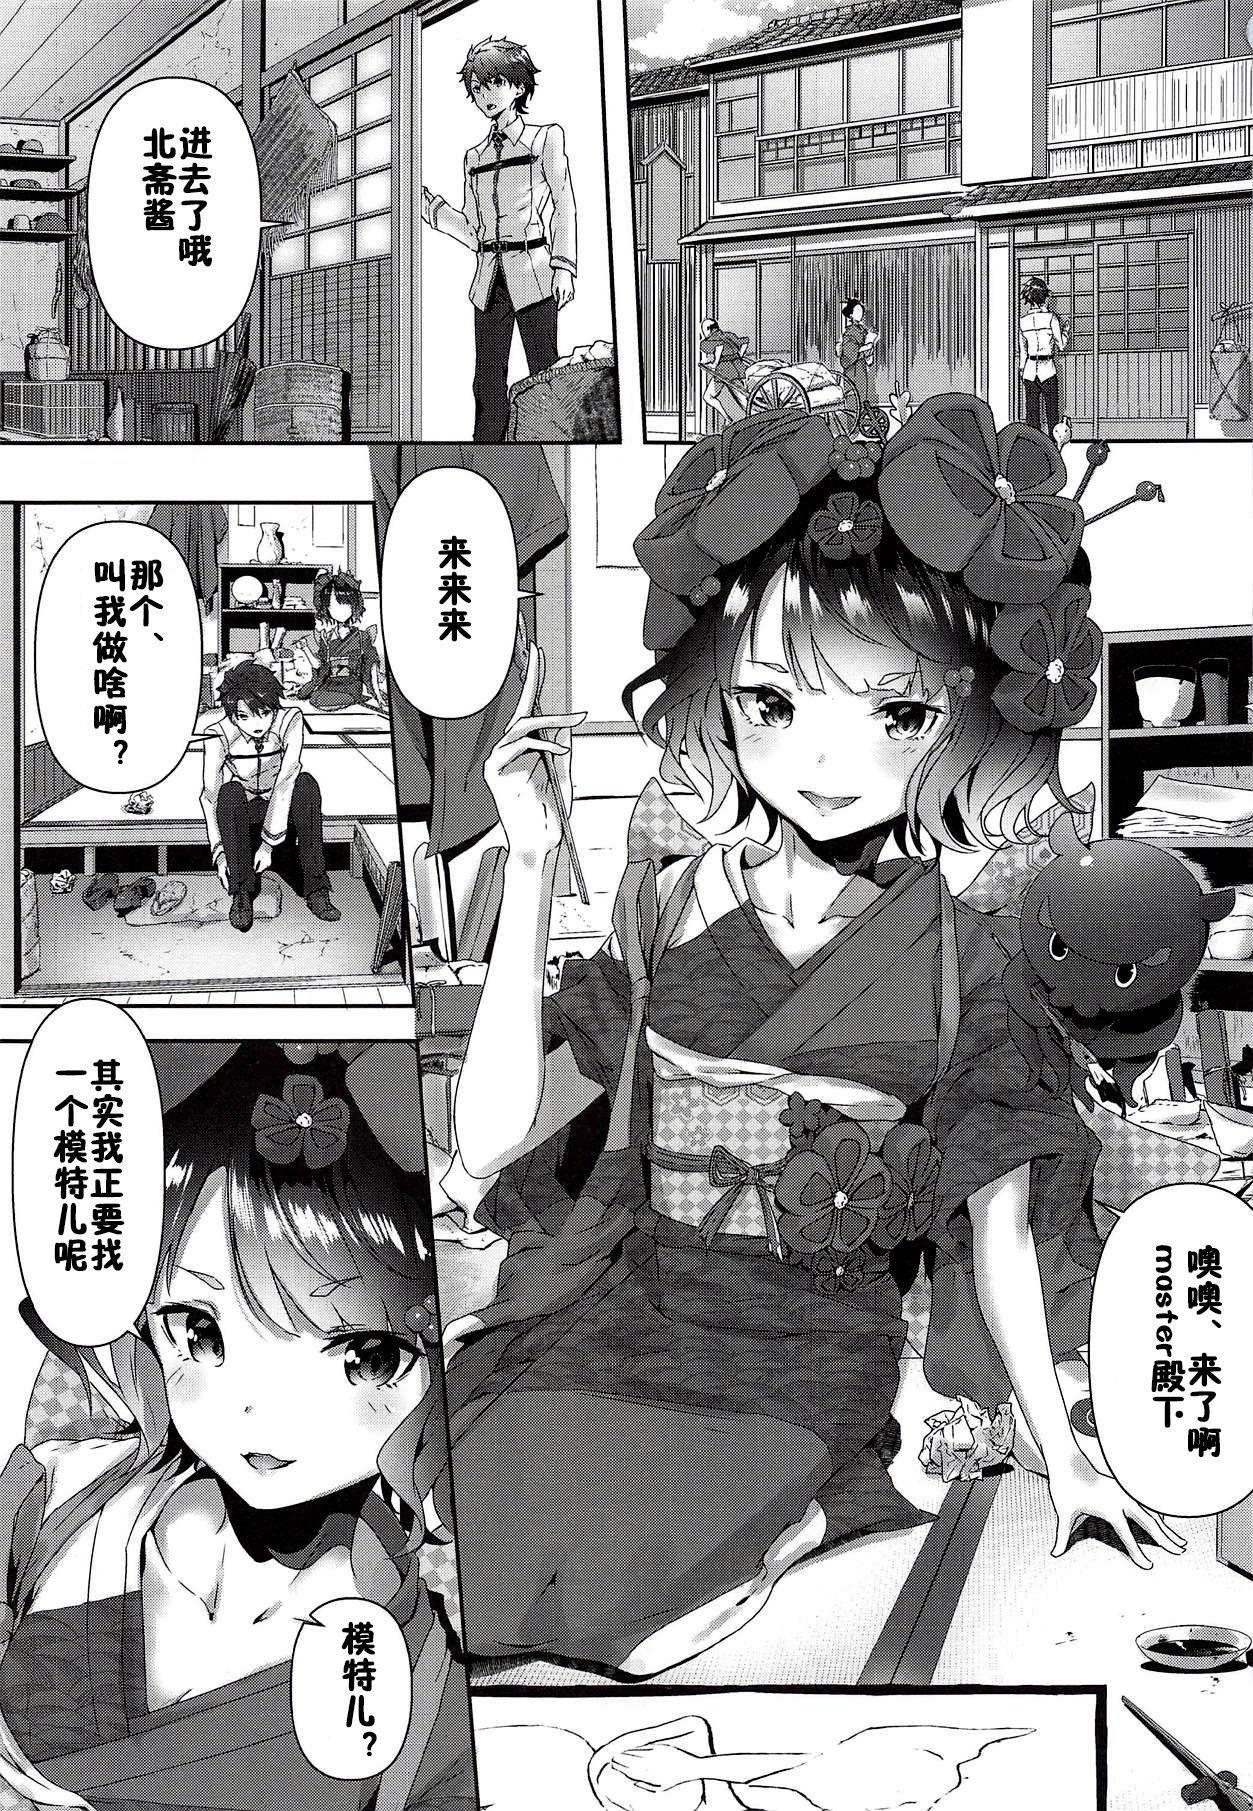 Novia Katsushika Oi no Manpuku Wagojin + Omakebon - Fate grand order Nurse - Page 2